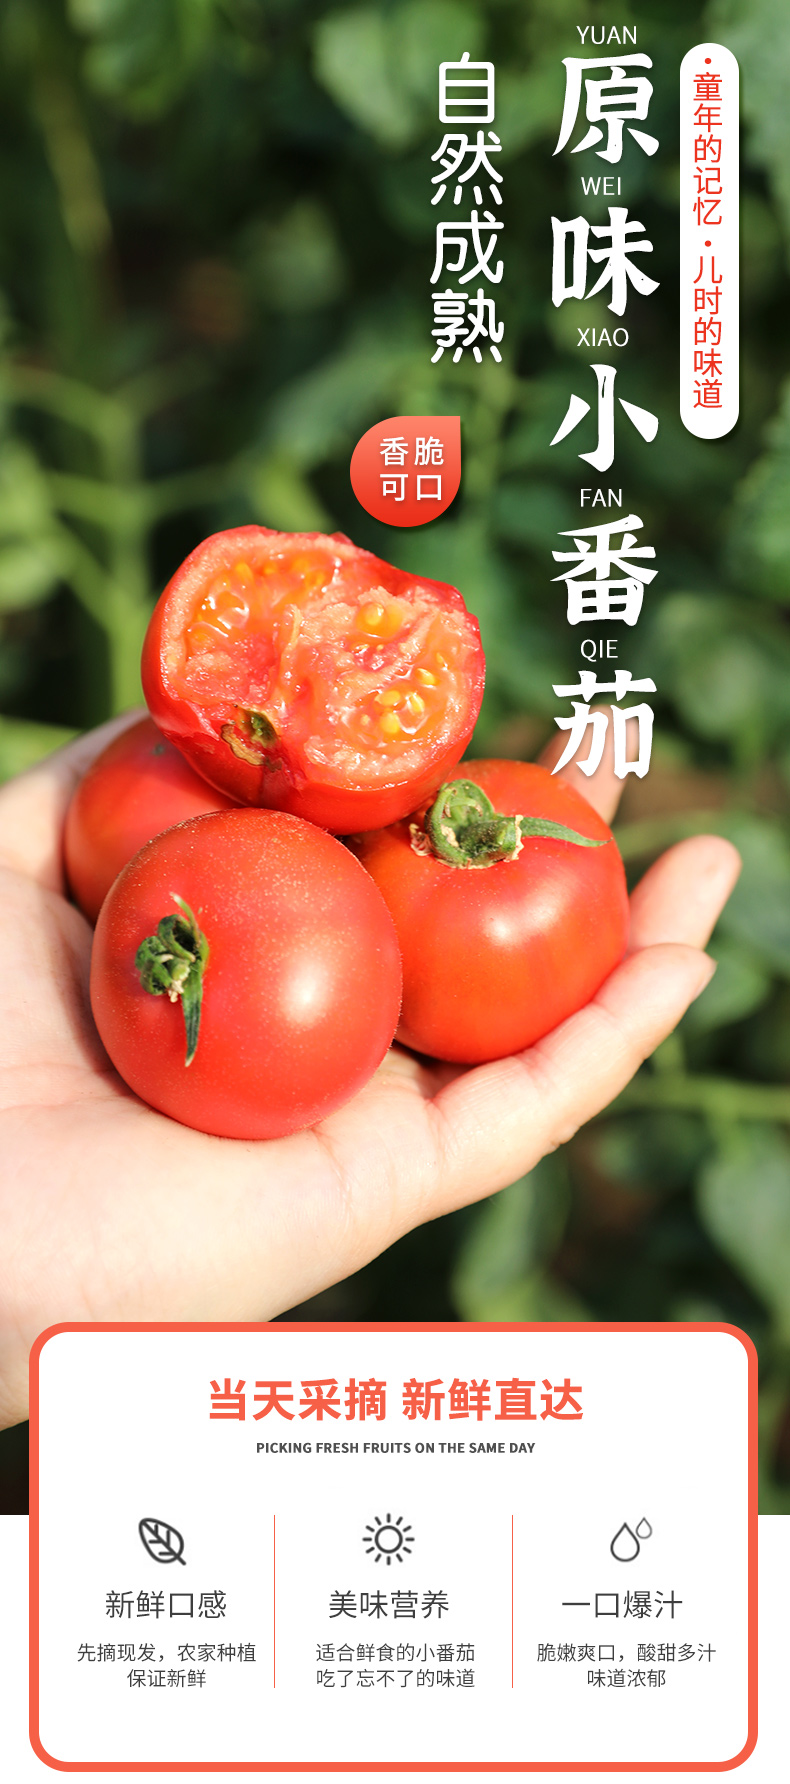  【北京馆】密云本地原味番茄   邮政农品